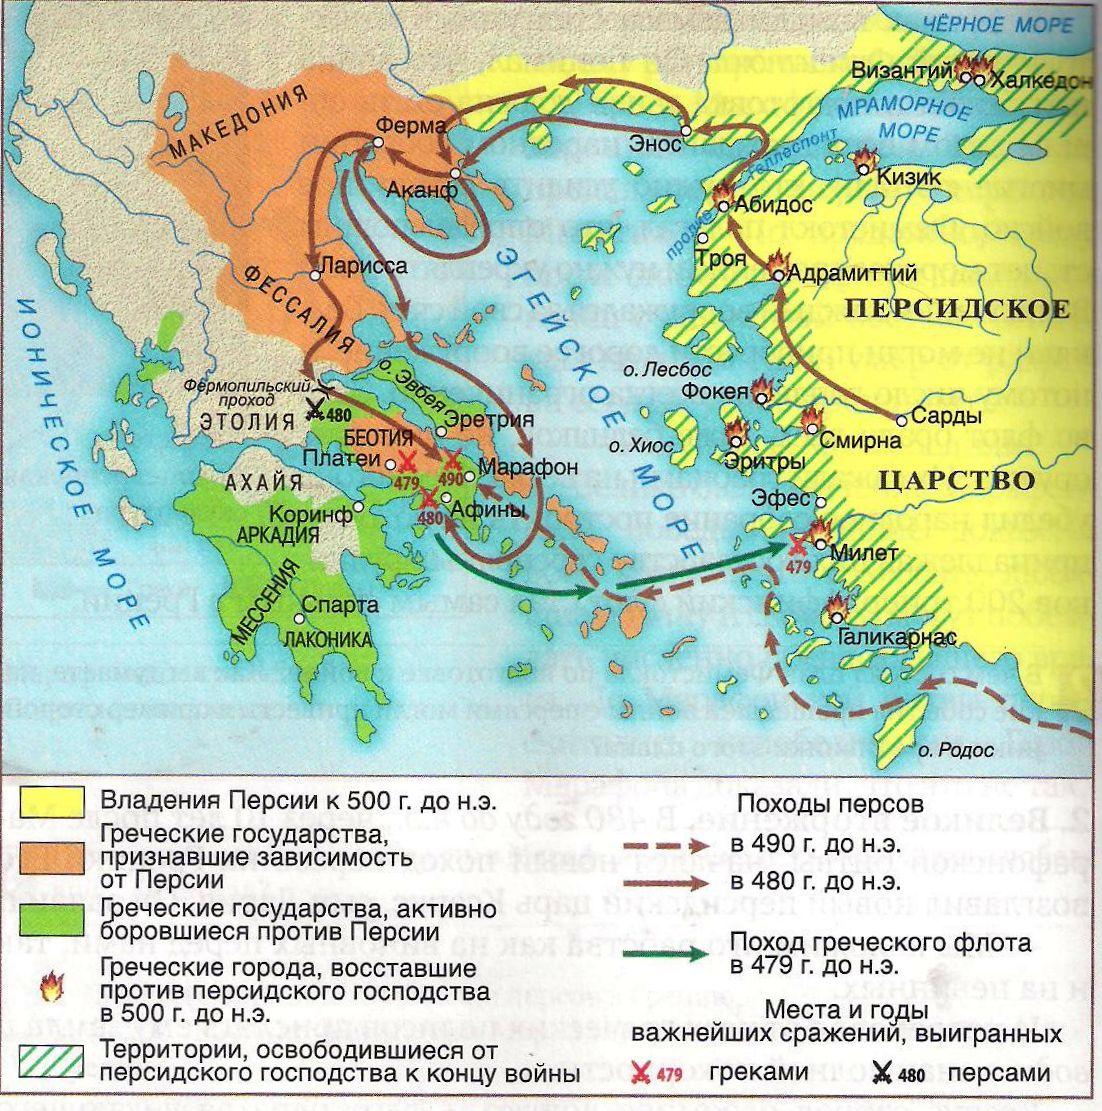 Вспомните главное сражение греков